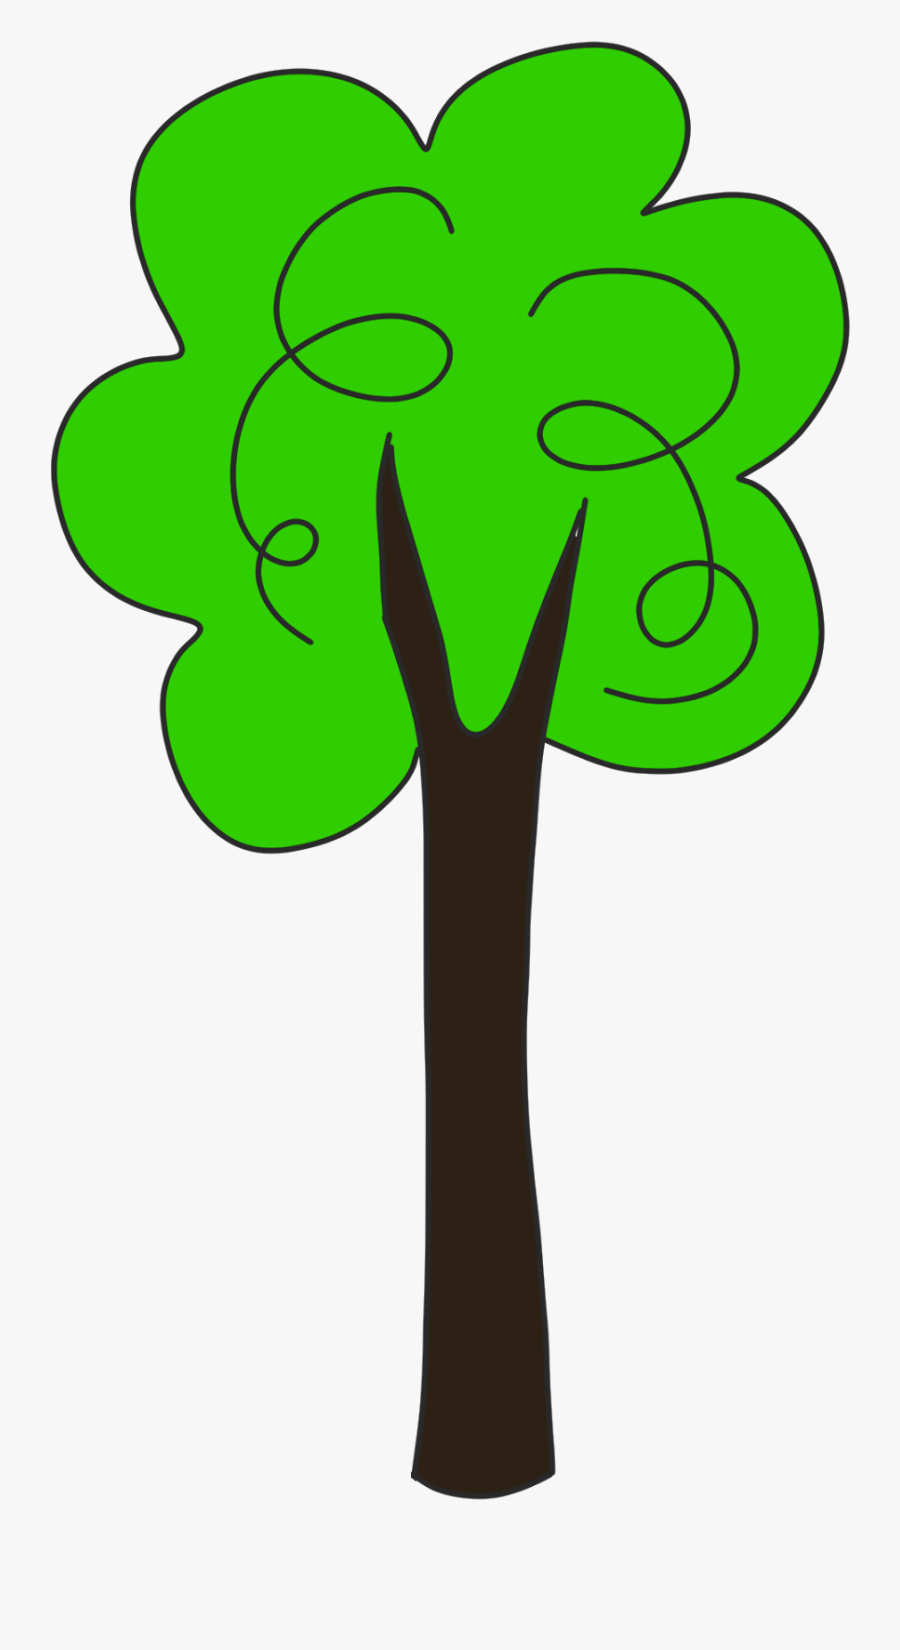 Tall Tree Clipart - Tall Tree Clip Art, Transparent Clipart